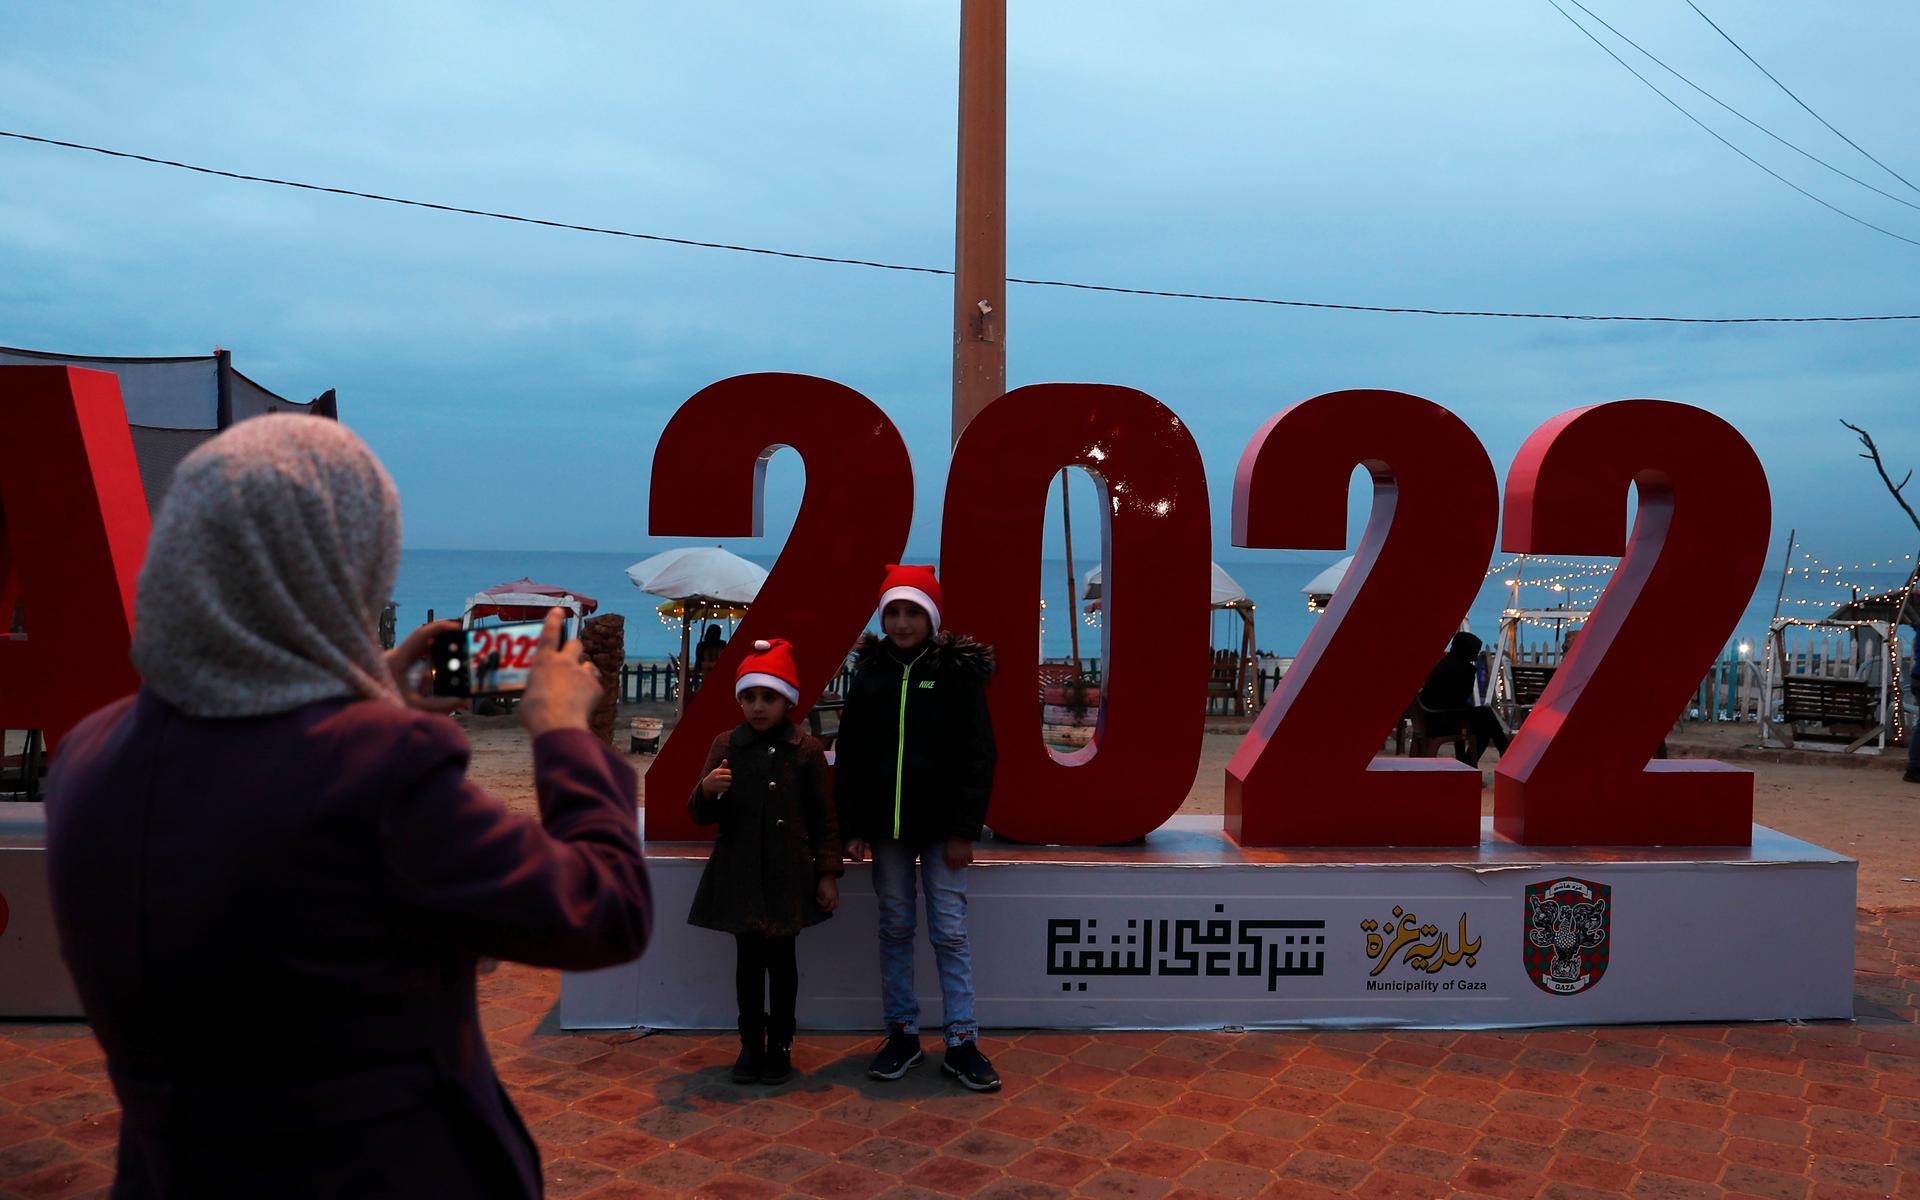 På stranden i Gaza har man även satt upp nyårsdekorationer inför tolvslaget. Här ringer man in det nya året en timme innan Bohuslän, som ligger en timme efter.